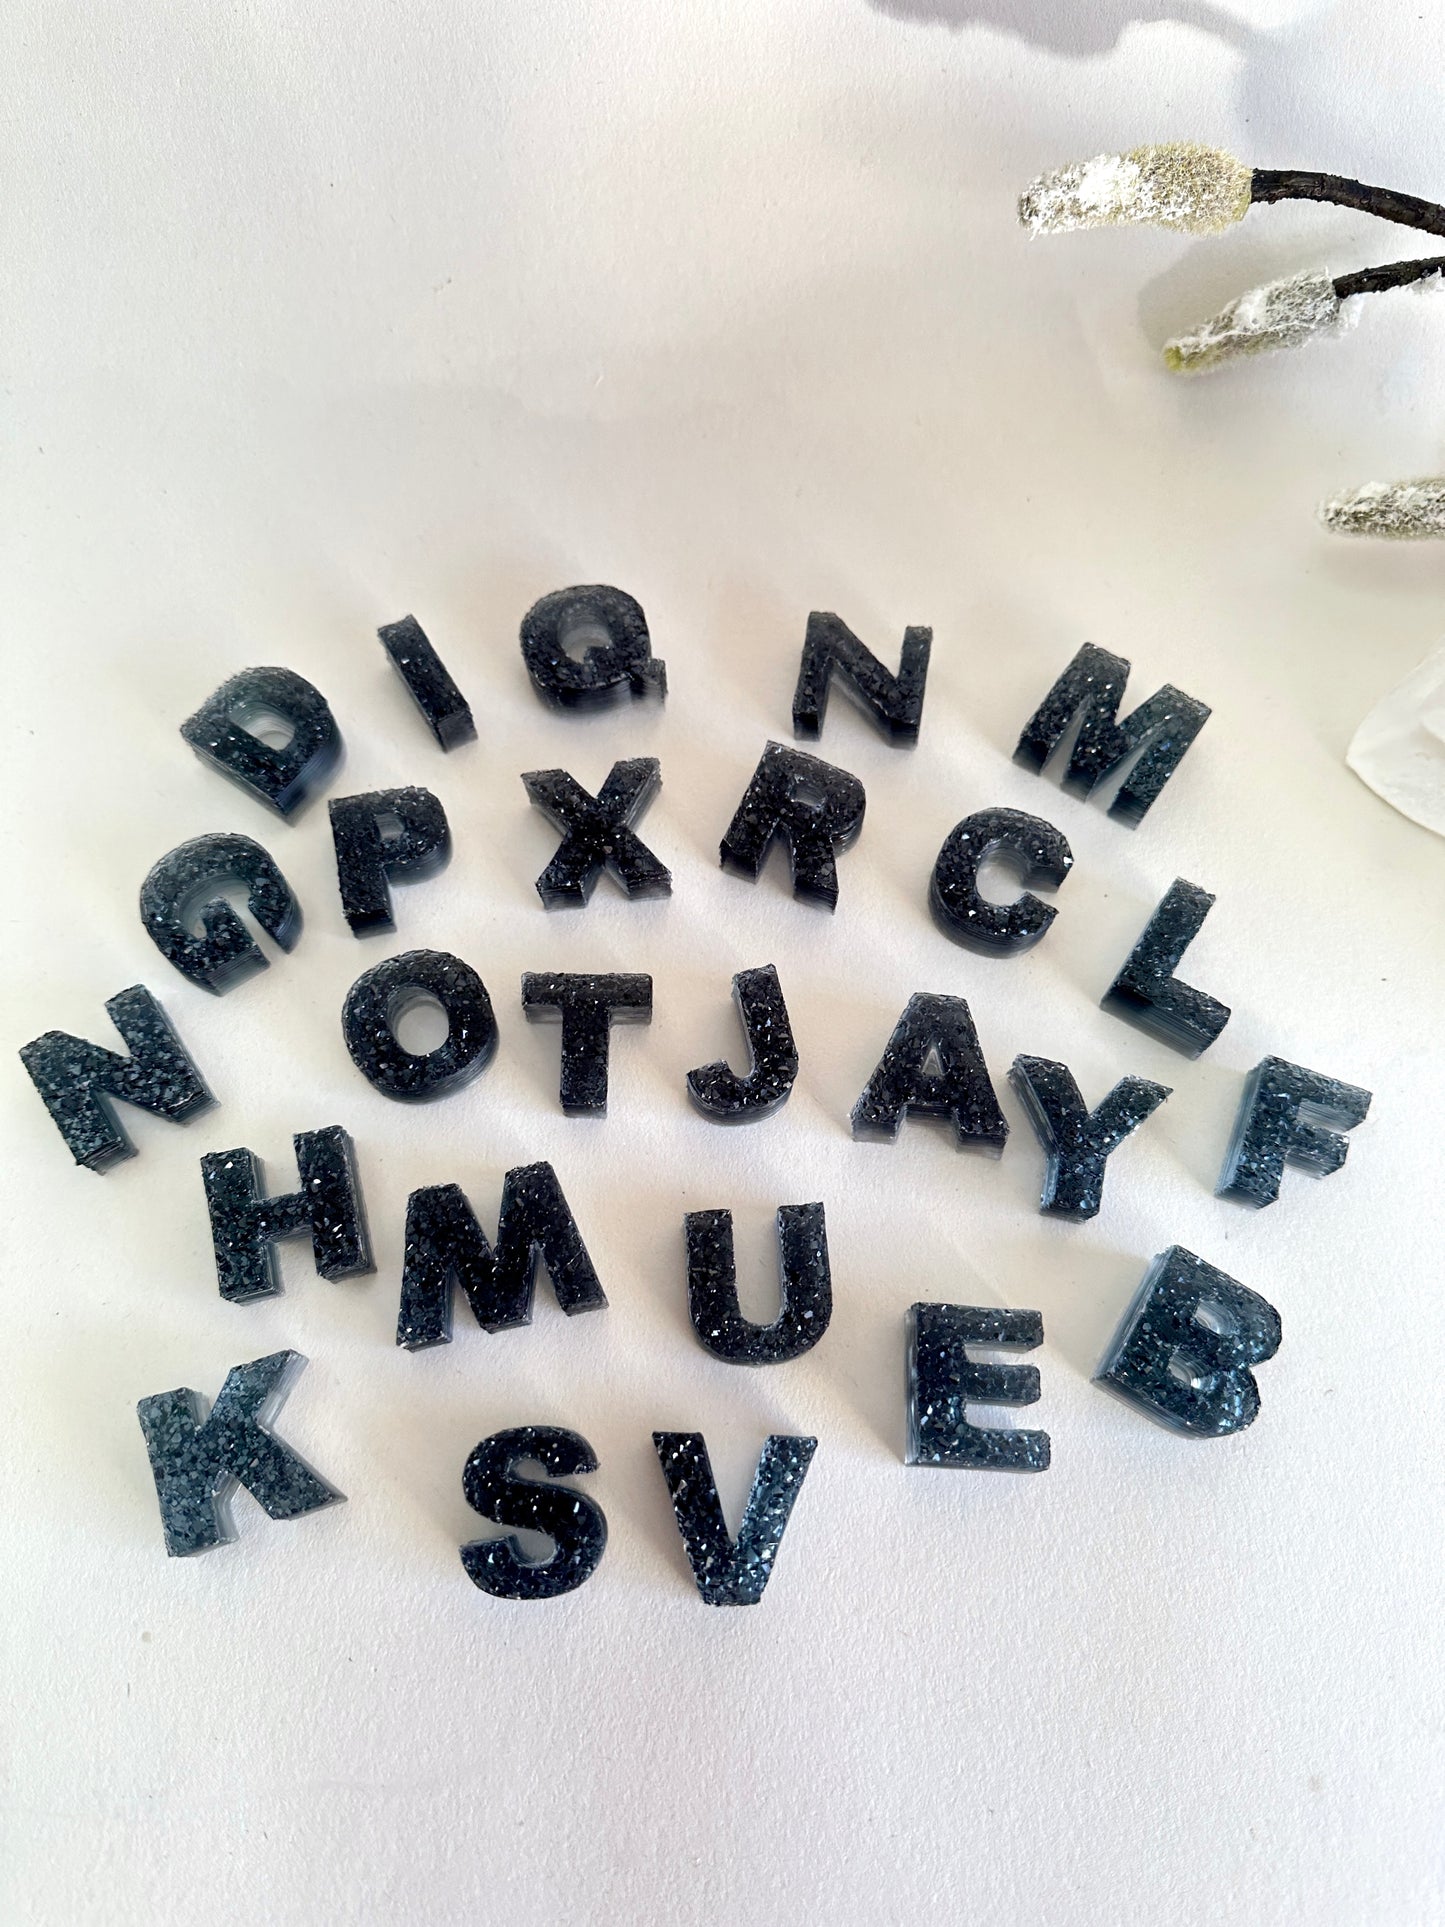 Atemberaubende Silikonform mit Kristall-Alphabet, künstlerisches Gießwerkzeug aus Kunstharz